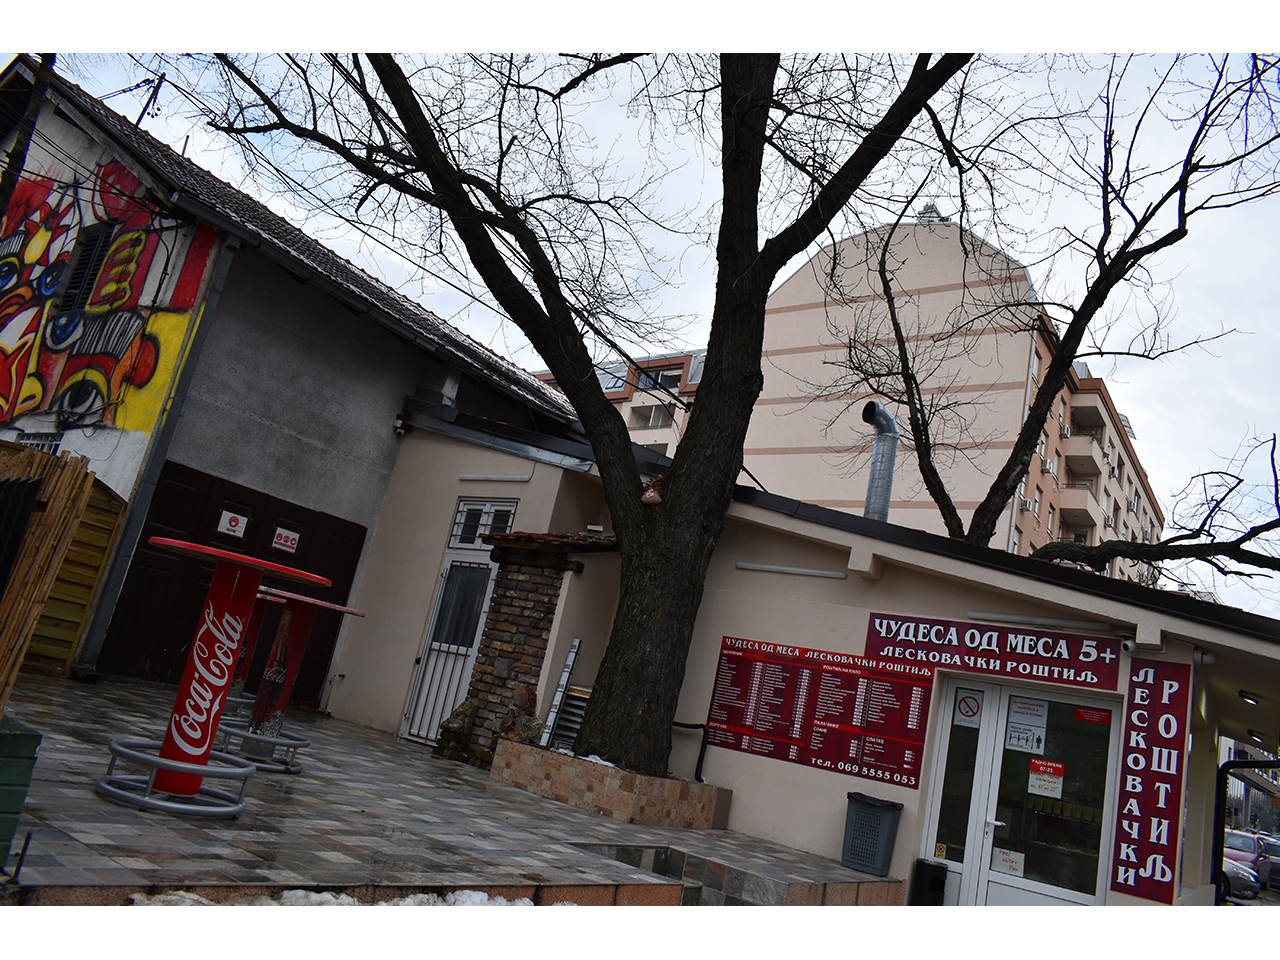 ČUDESA OD MESA 5+ Fast food Beograd